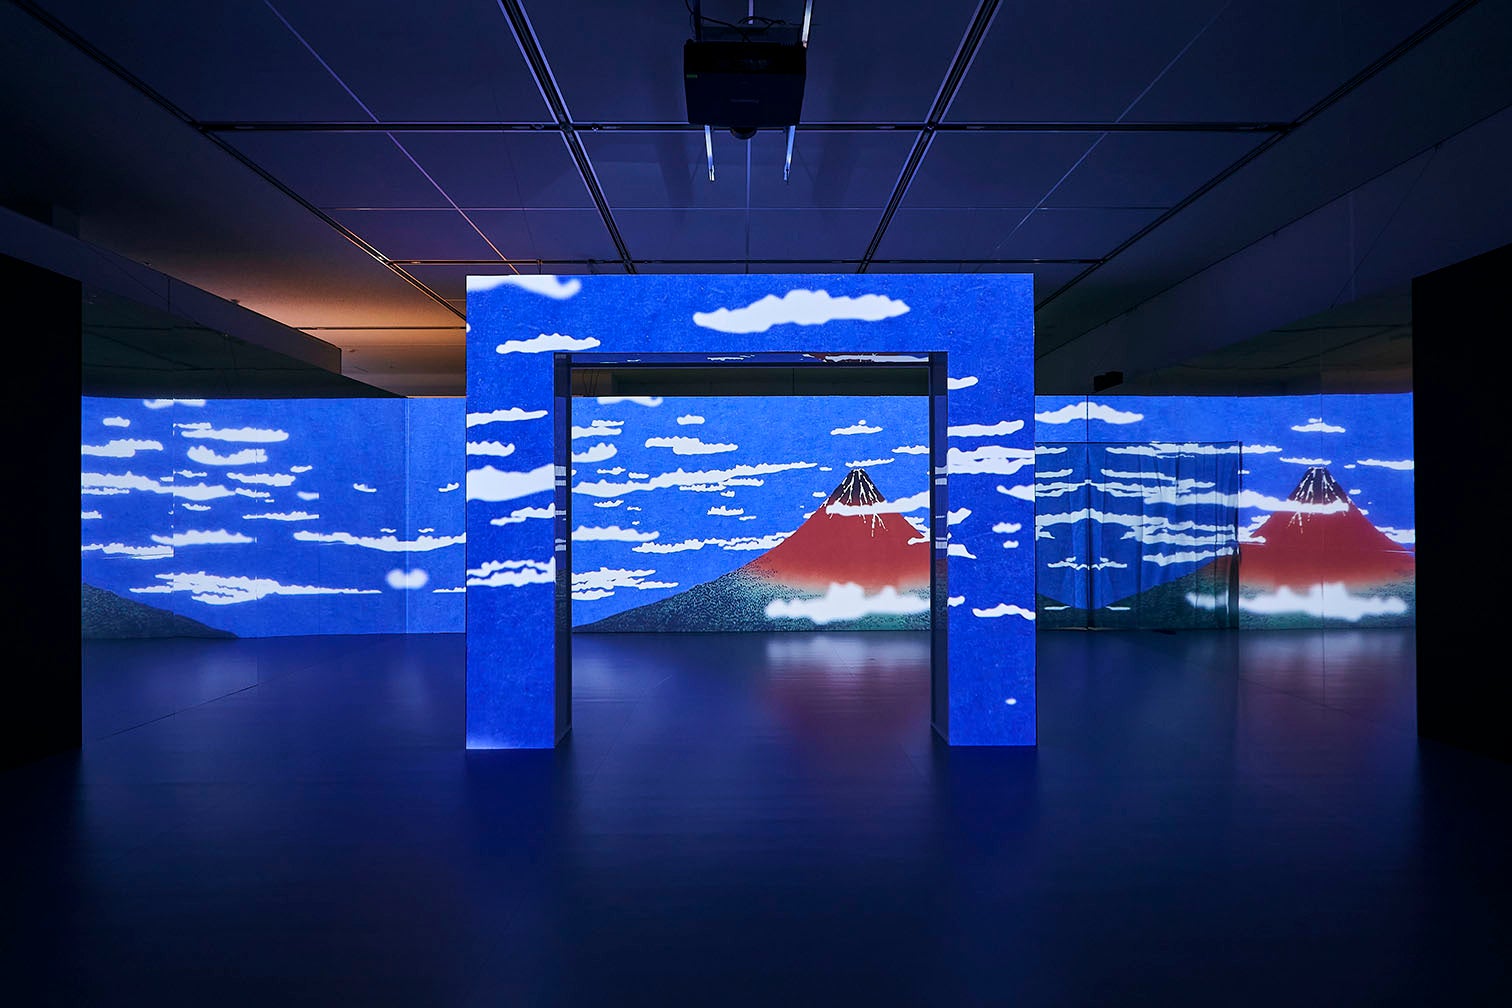 一旗プロデュース「空間体感！動き出す浮世絵展 NAGOYA」の公式記録映像第二弾“藍”を公開。世界で「ジャパン・ブルー」と絶賛され、その美しさに多くの人が魅了される「藍色」をテーマとする映像空間。